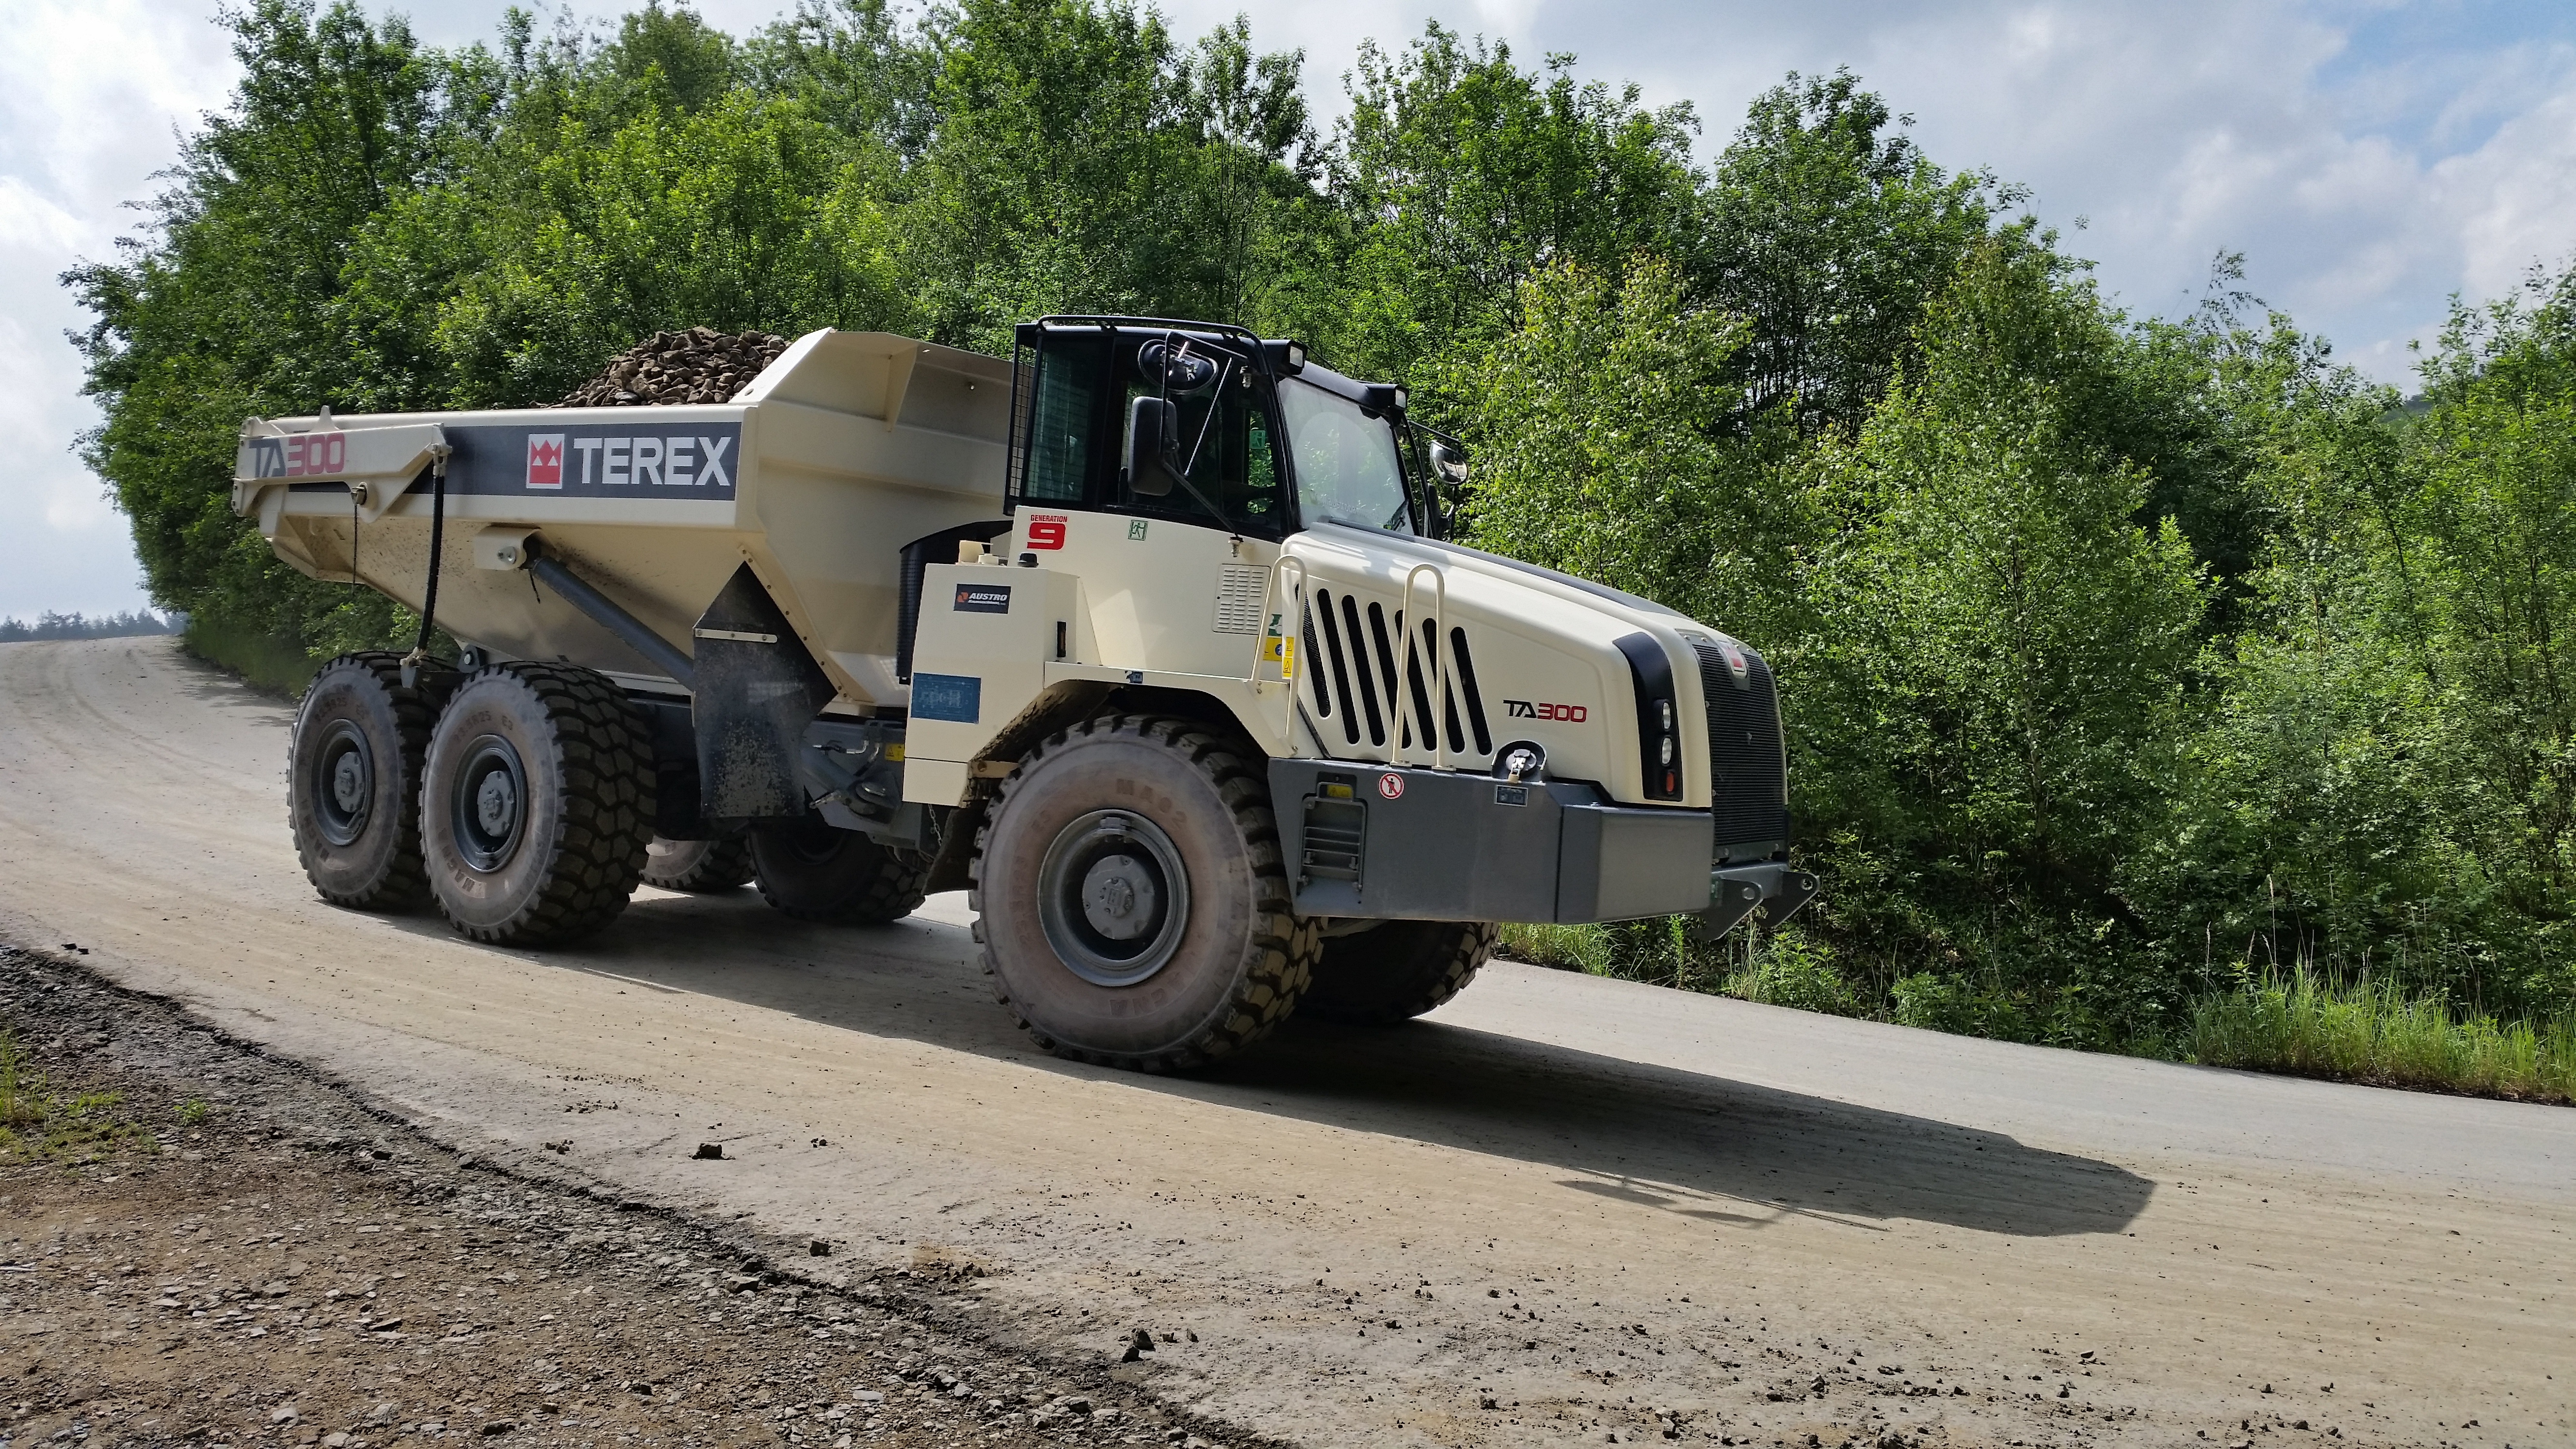 Dmper articulado TA300 de Terex Trucks